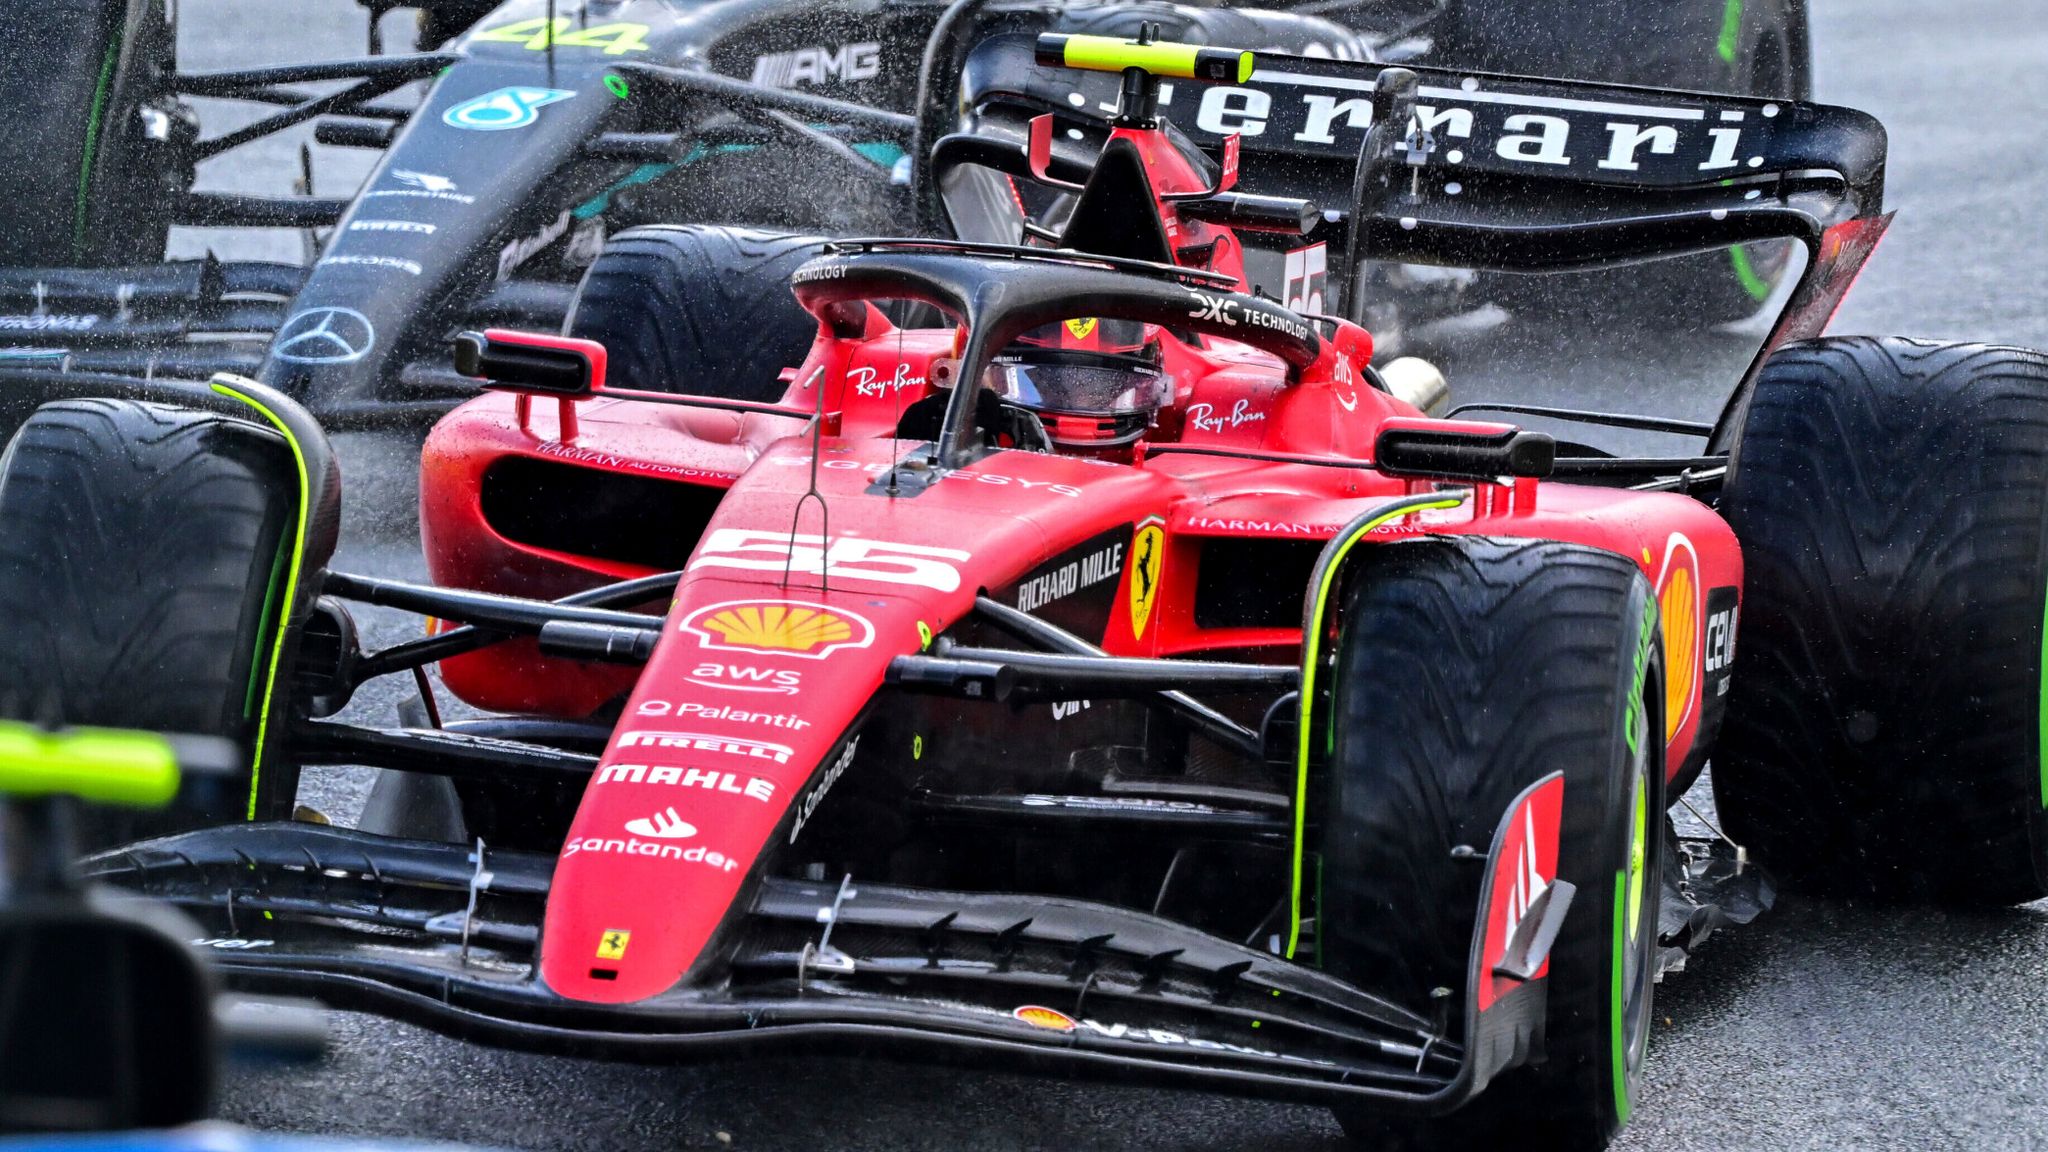 Ferrari: F1 2022 car not a race winner just yet